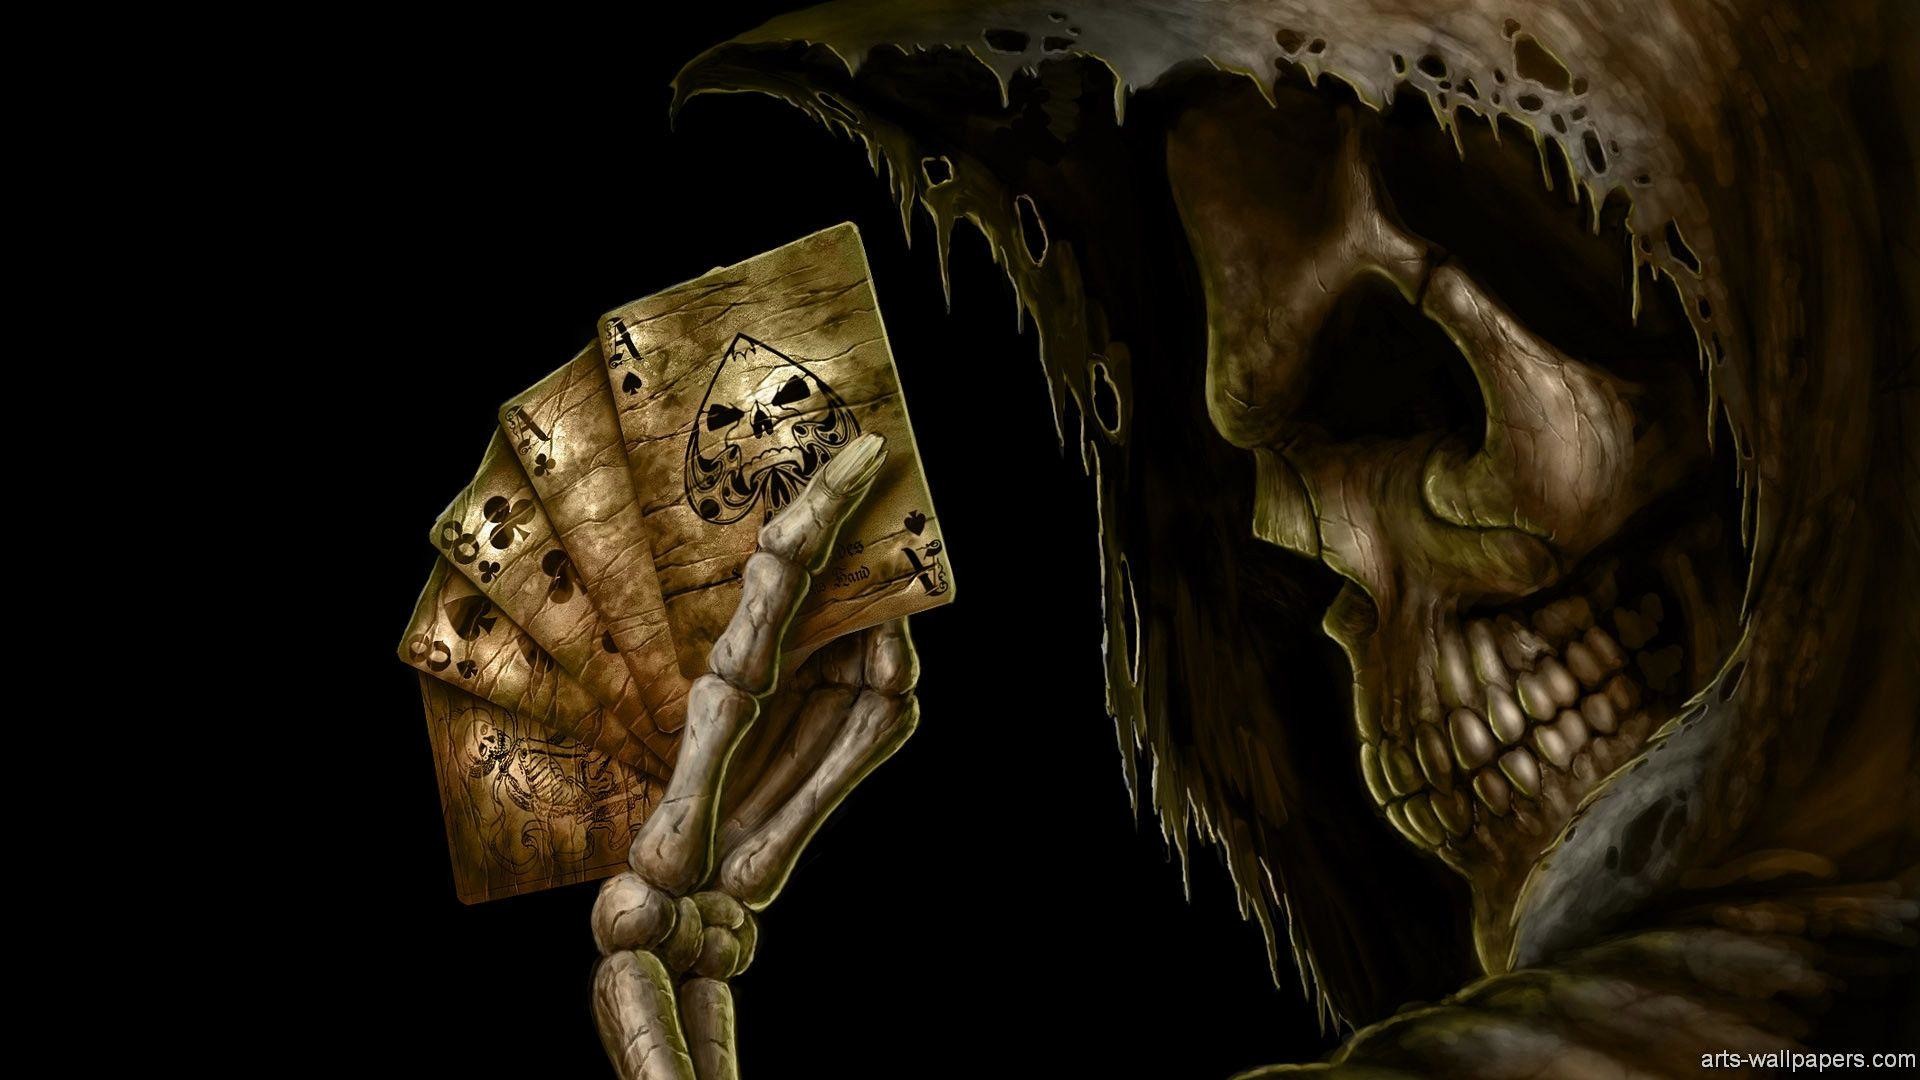 totenkopf wallpaper,demonio,personaje de ficción,cráneo,cg artwork,oscuridad